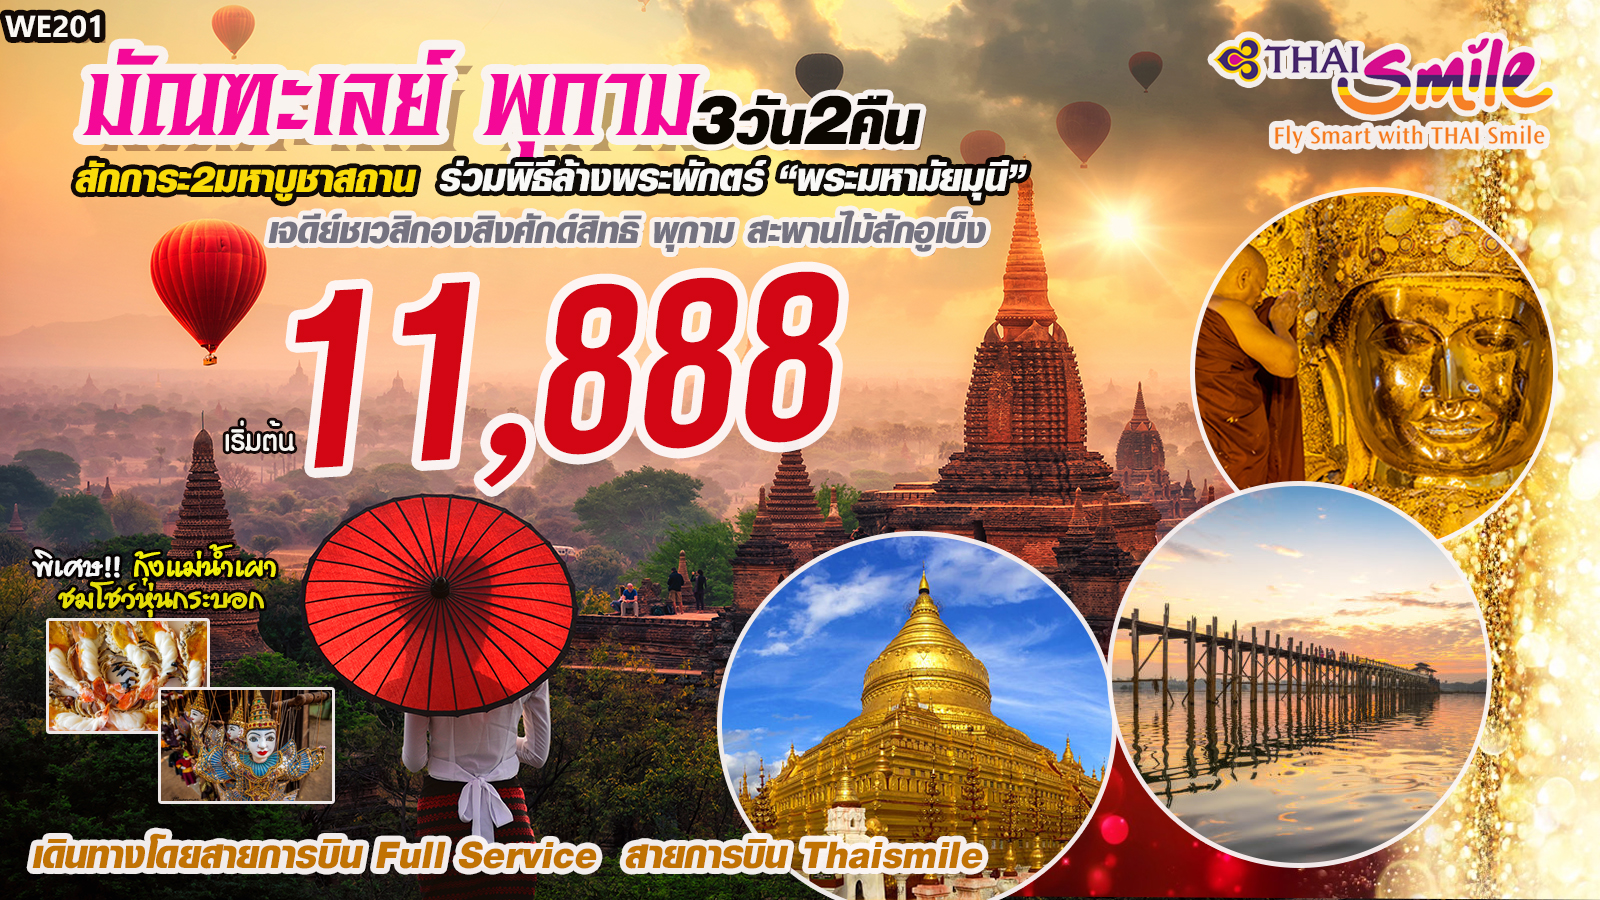 ทัวร์พม่า IT-WE201 พม่า มัณฑเลย์ พุกาม 